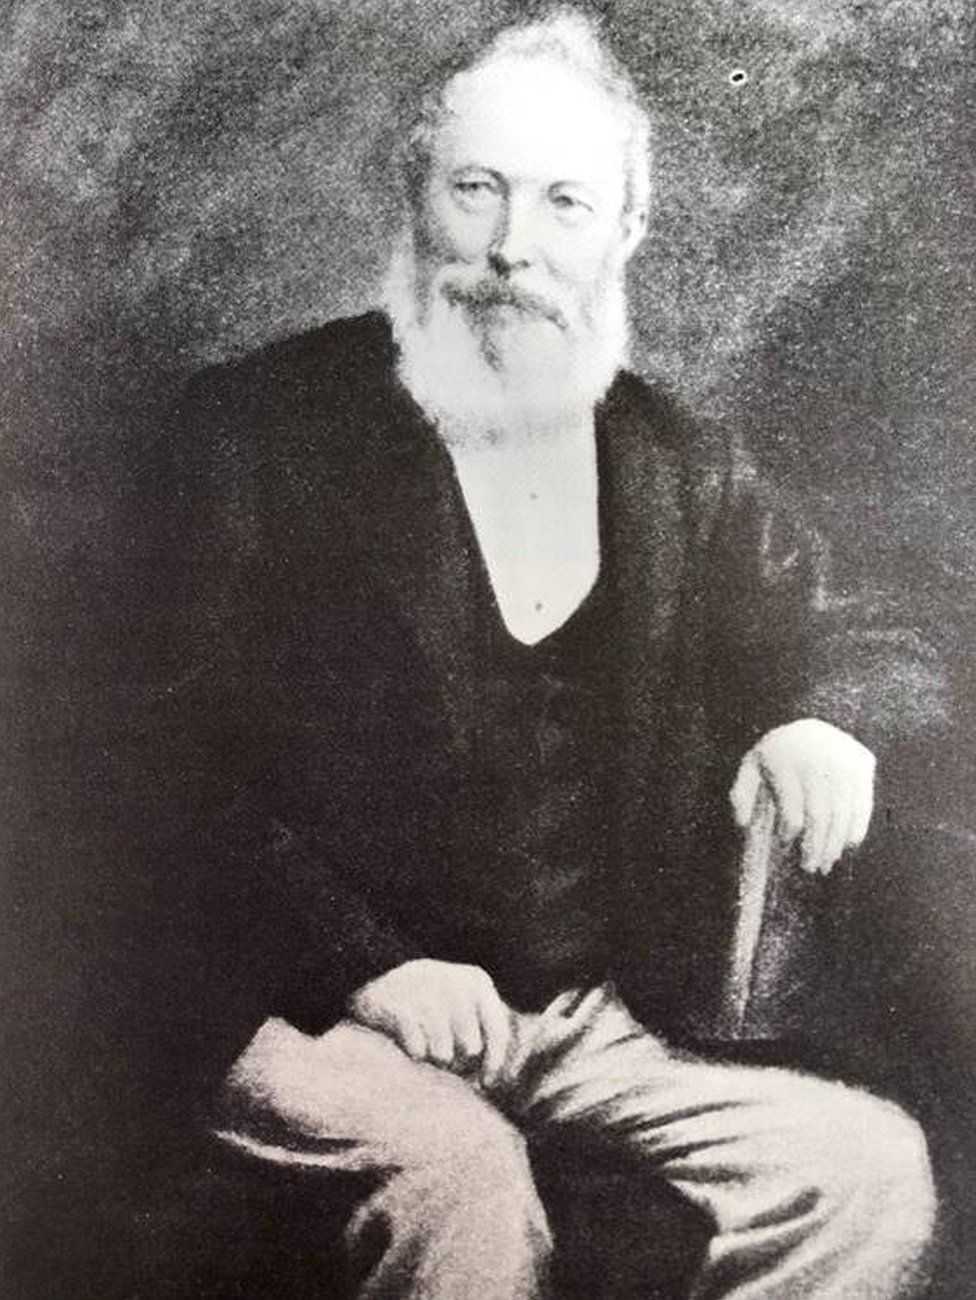 A portrait of William Debenham